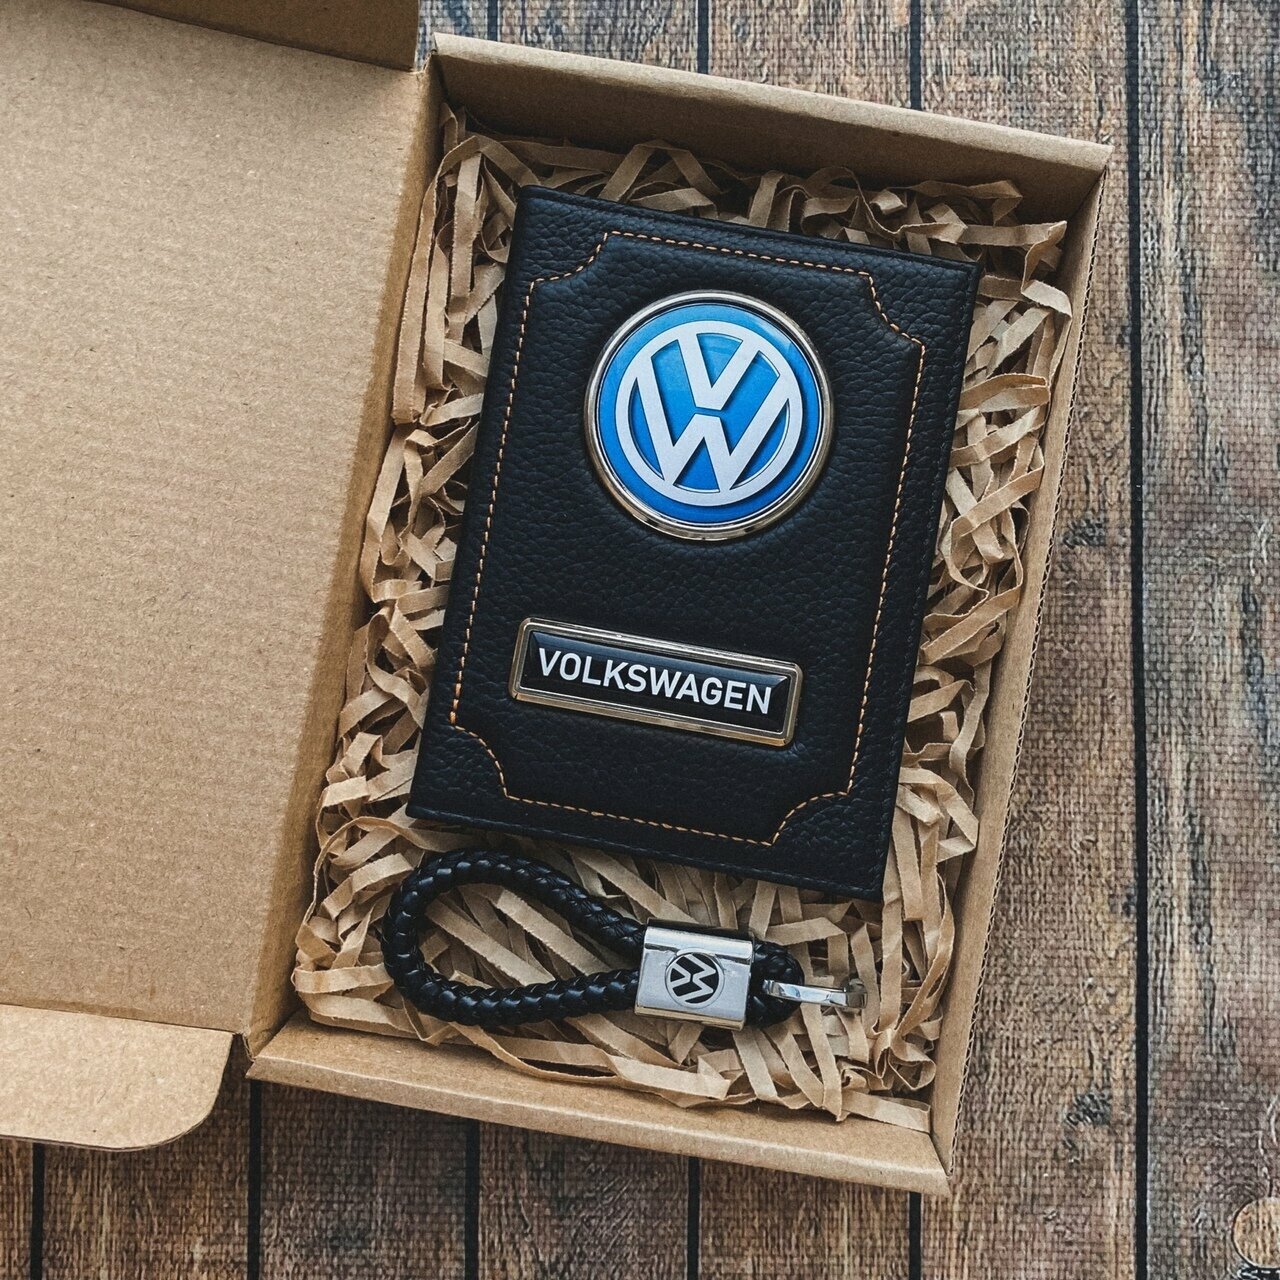 Подарочный набор автолюбителю Volkswagen/Подарок мужу/ Кожаная обложка+плетенный брелок